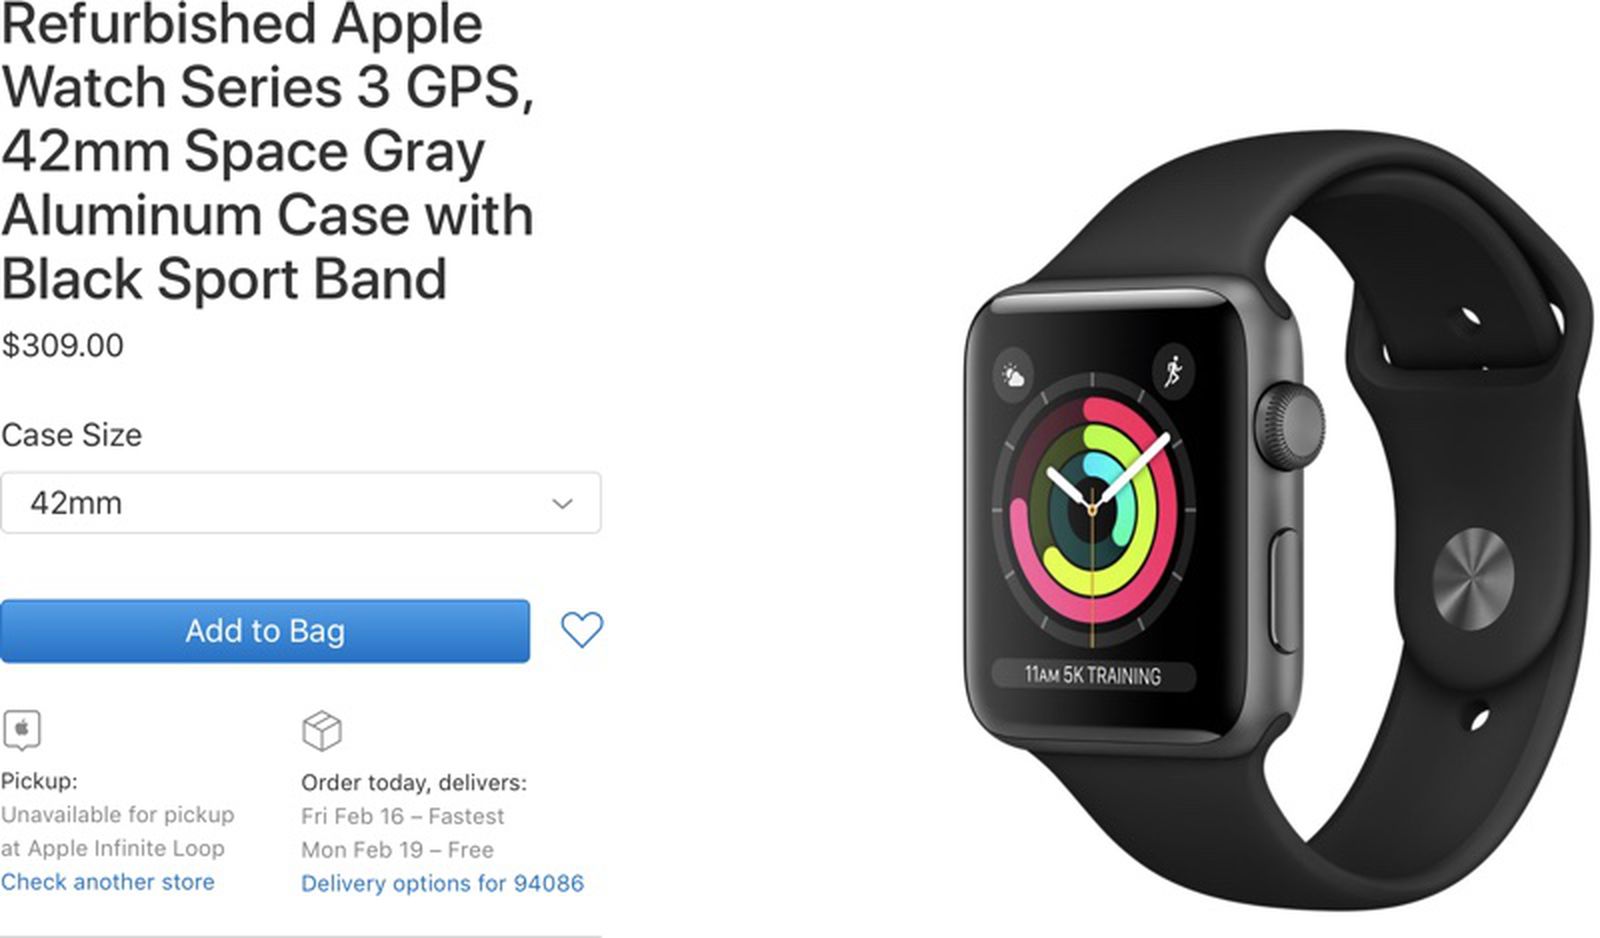 Apple Now Selling Refurbished Apple Watch Series 3 Models - MacRumors